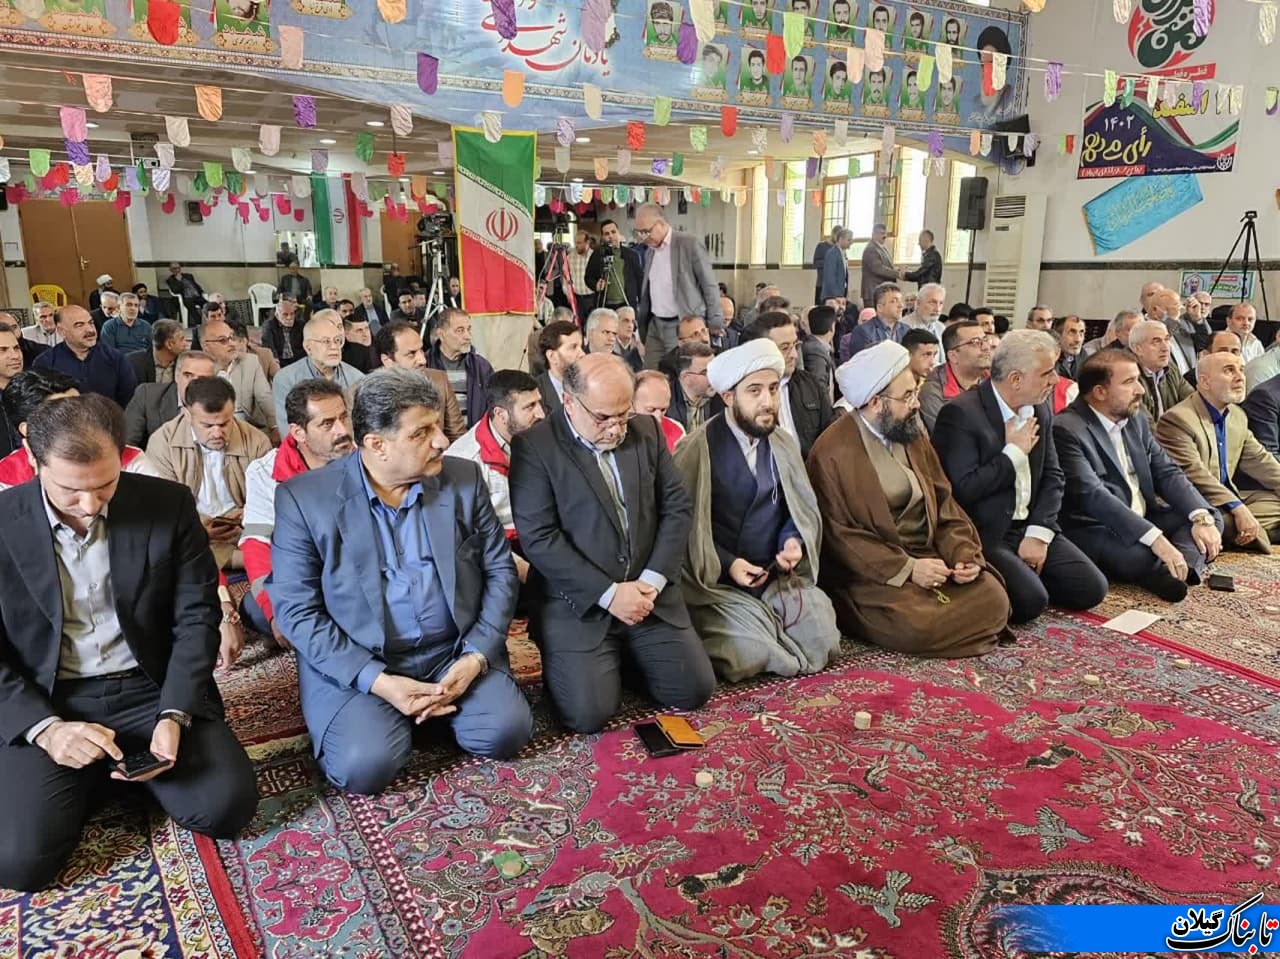 گزارش تصویری از نمازجمعه شهرستان لنگرود با حضور استاندارکیلان درمسجدانسرمحله